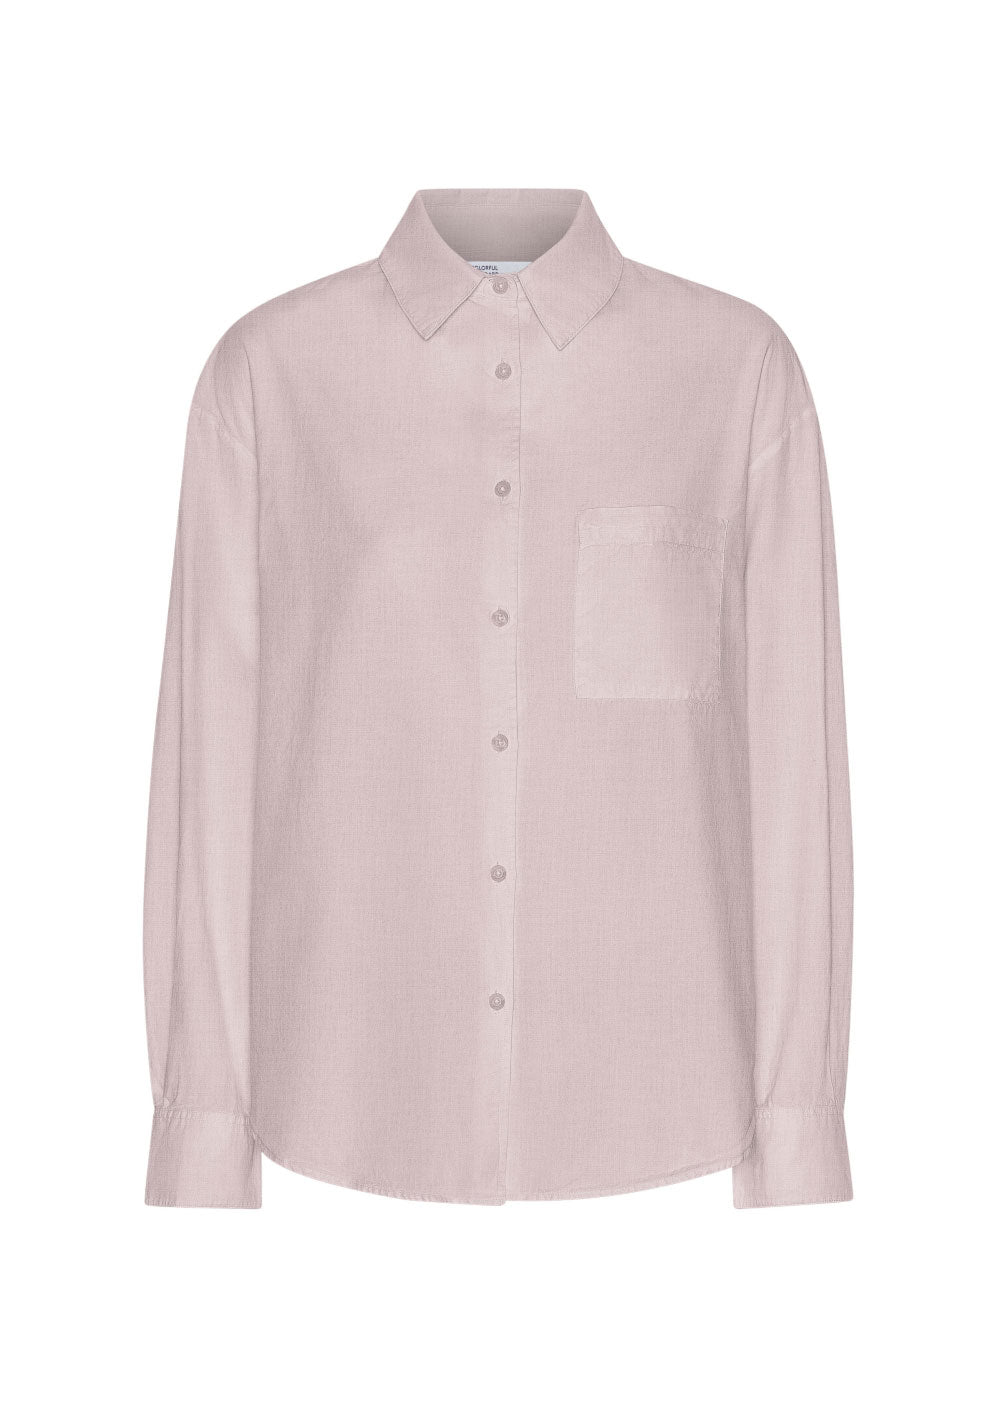 Organic Oversized Shirt - Faded Pink - Colorful Standard - Danali